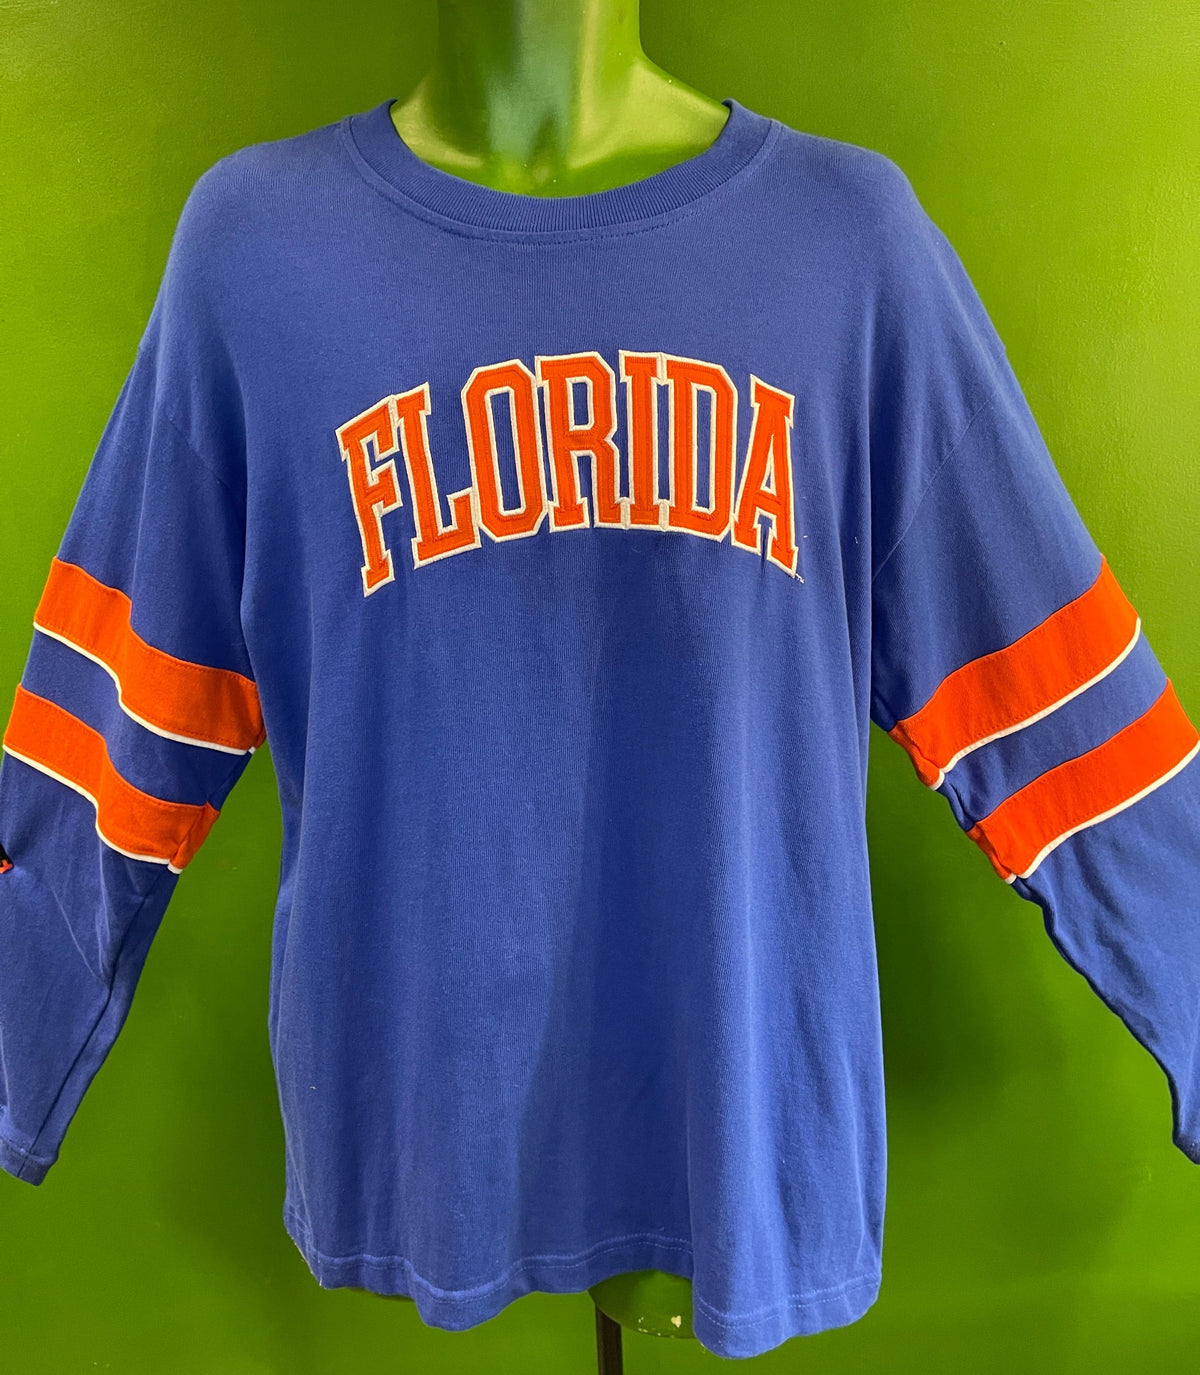 NCAA Florida Gators Pro Edge Stitched Sweatshirt Men's Large